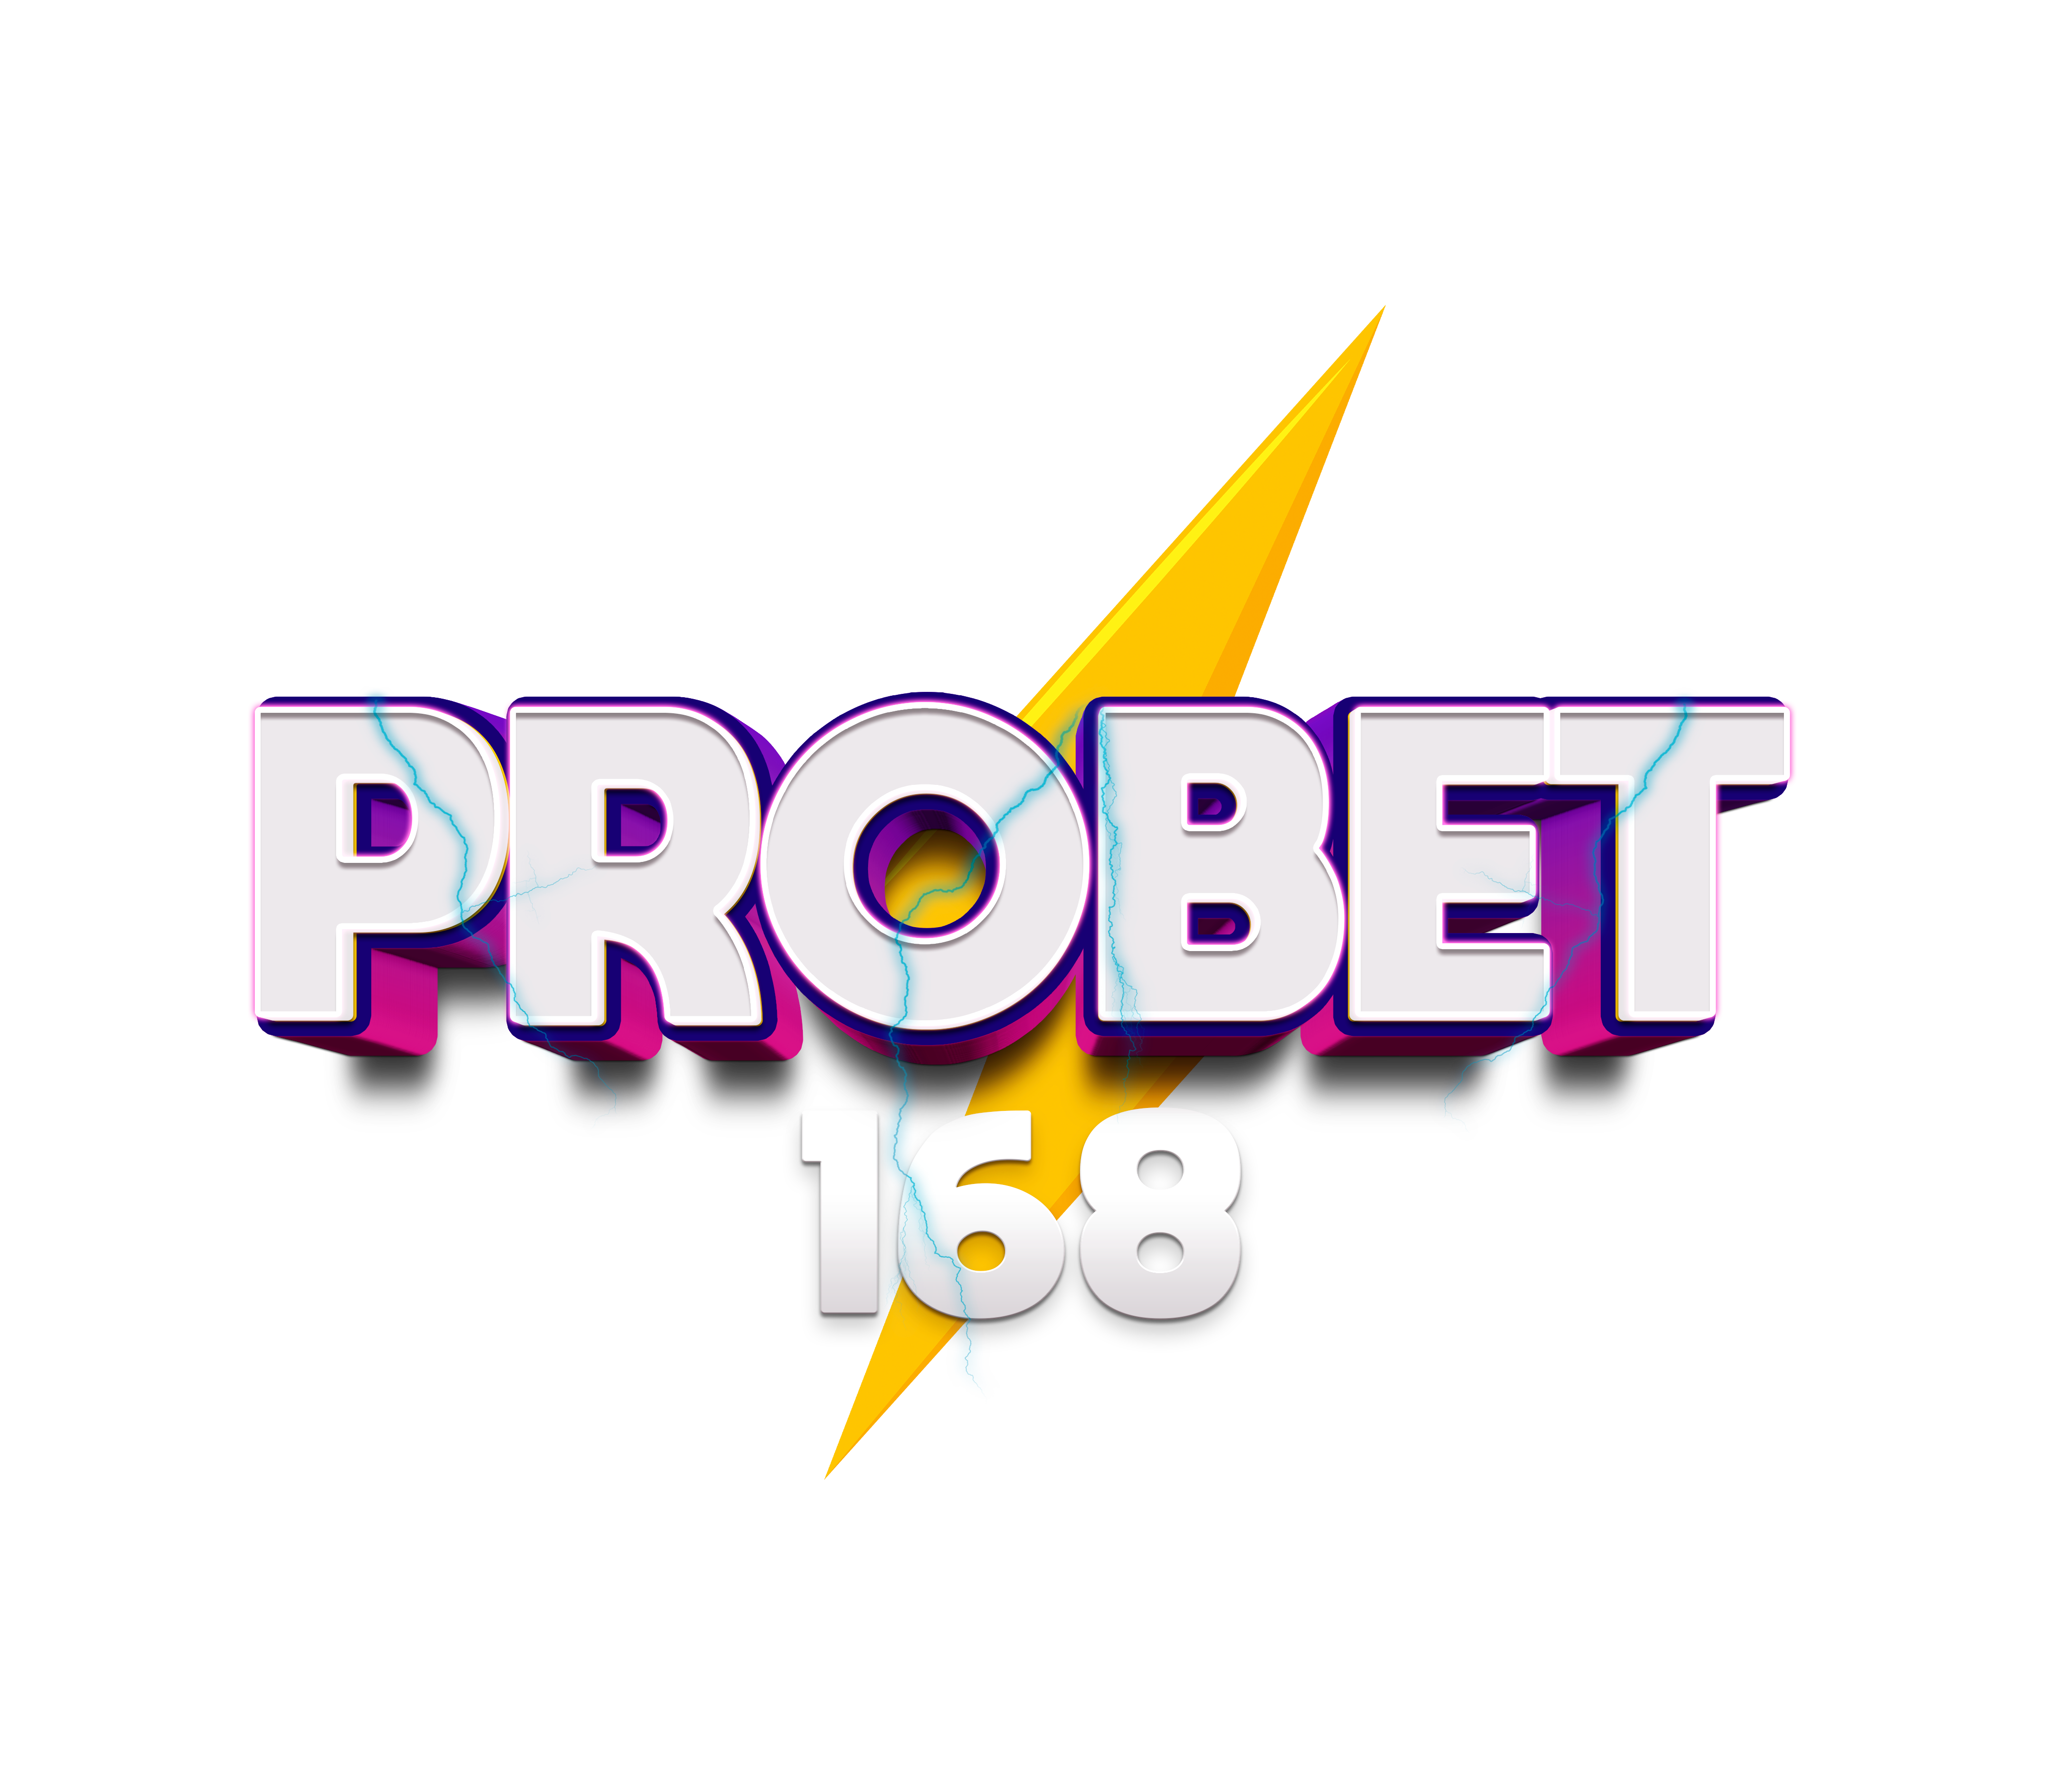 Probet168